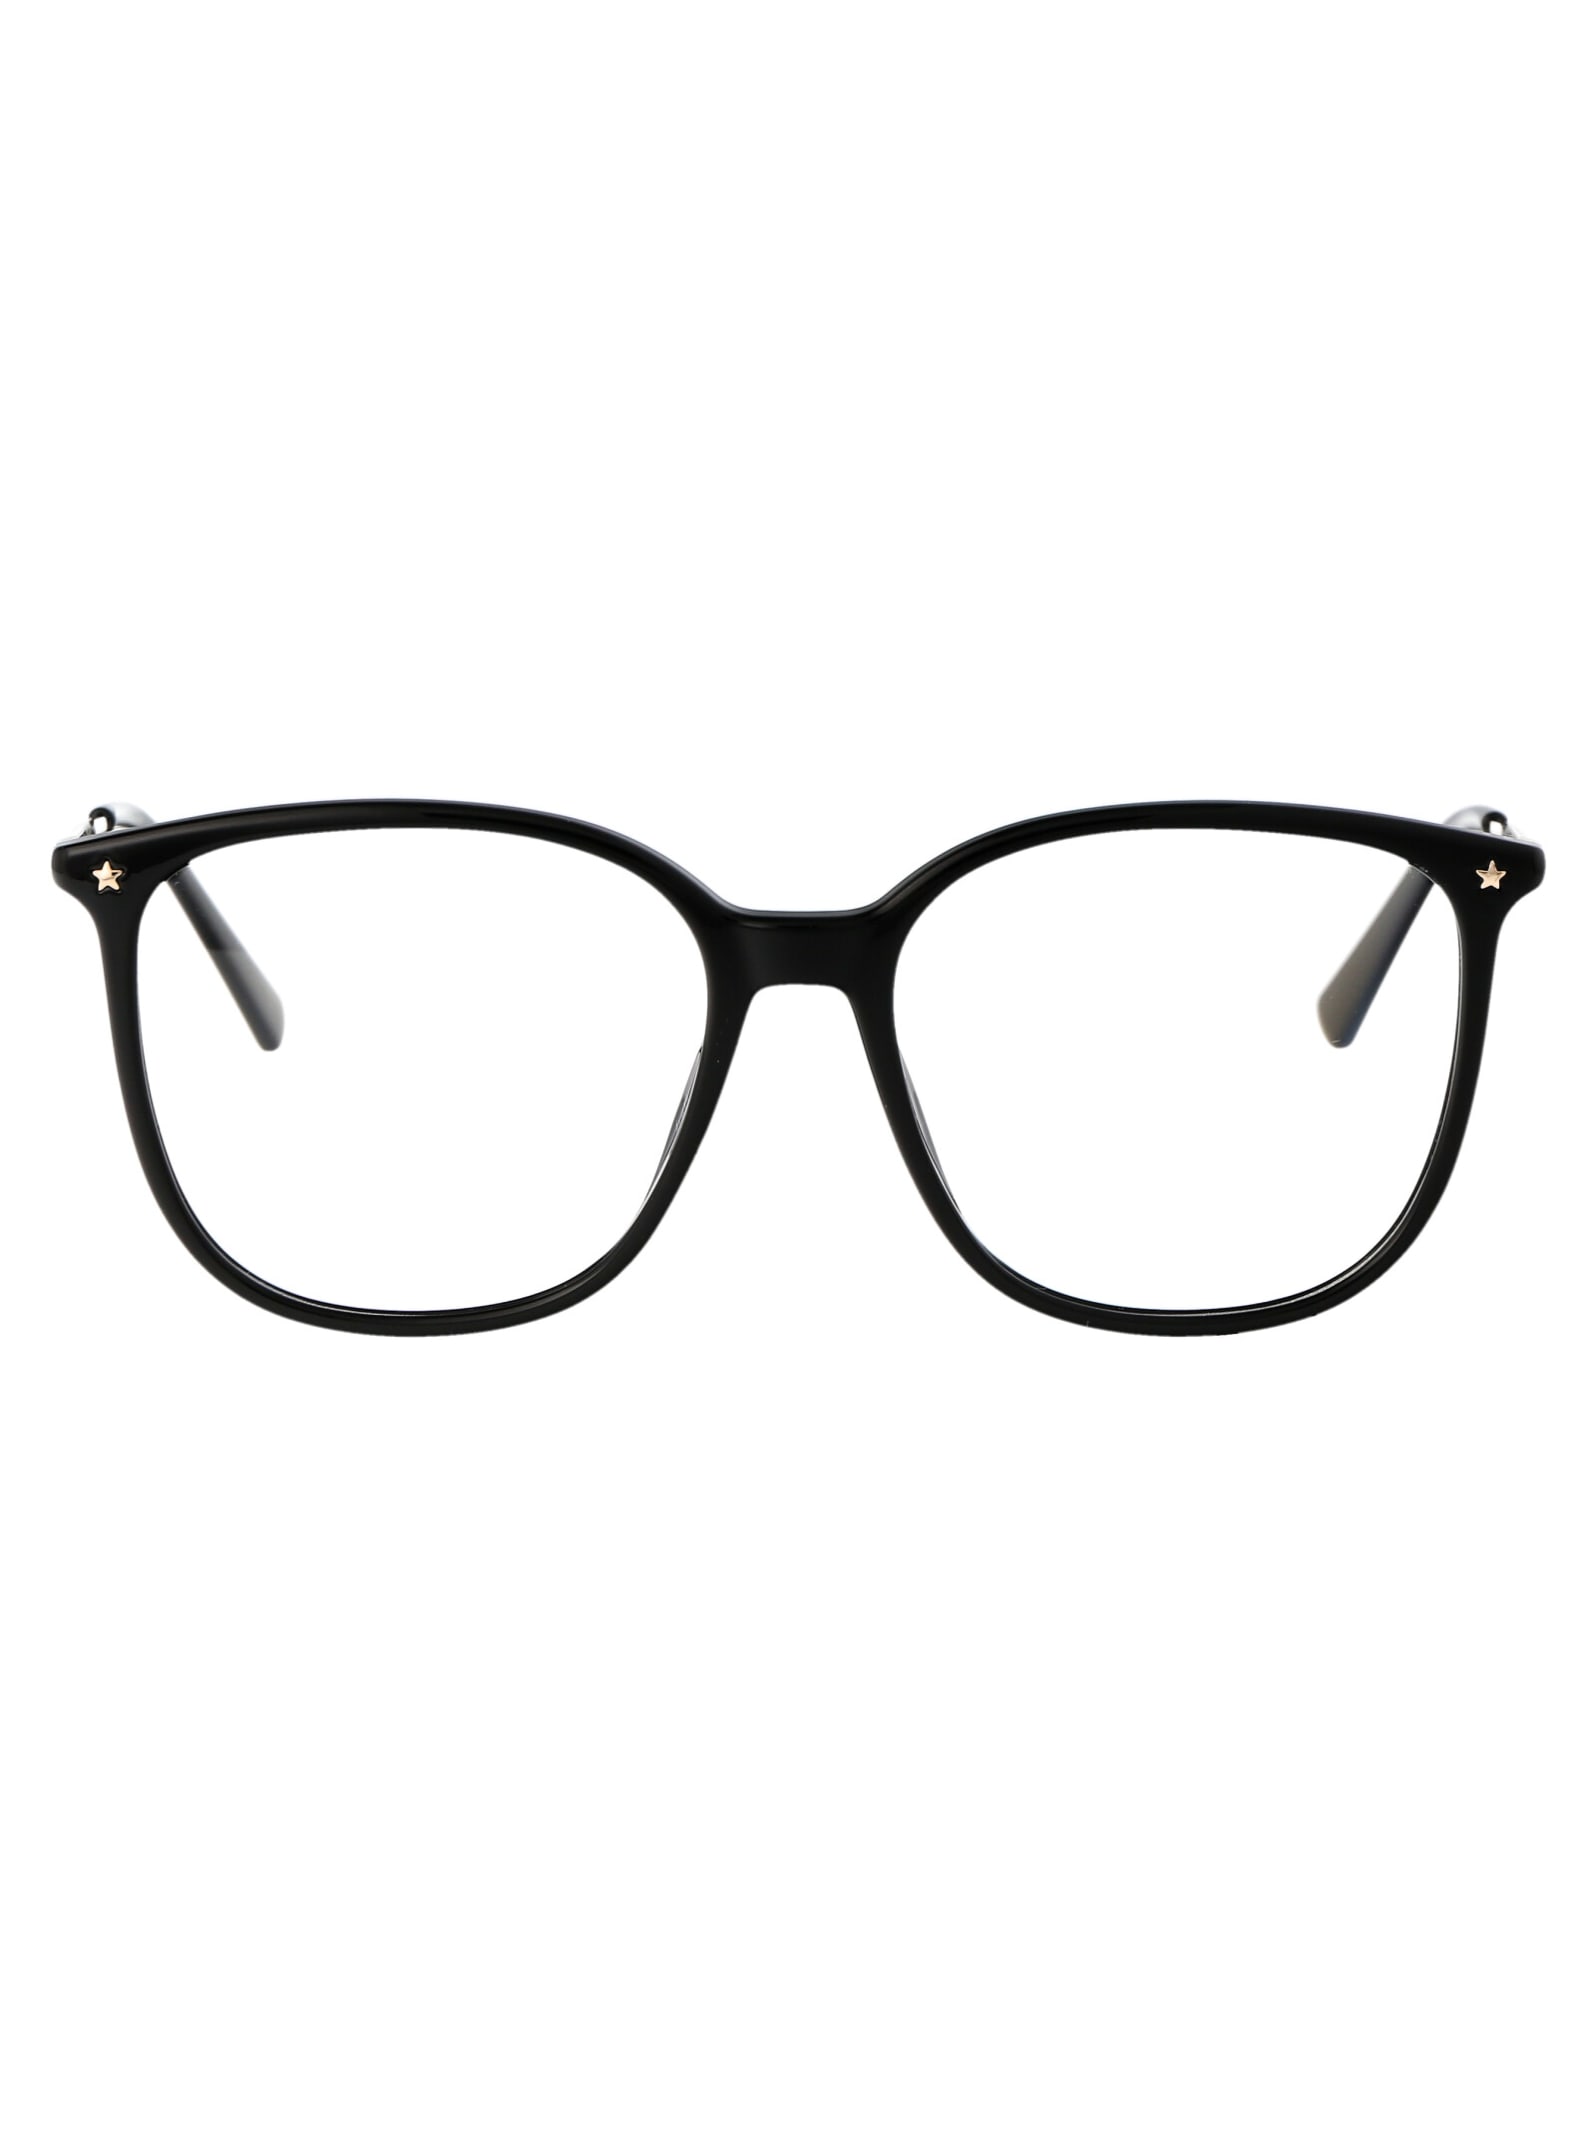 Cf 1029 Glasses